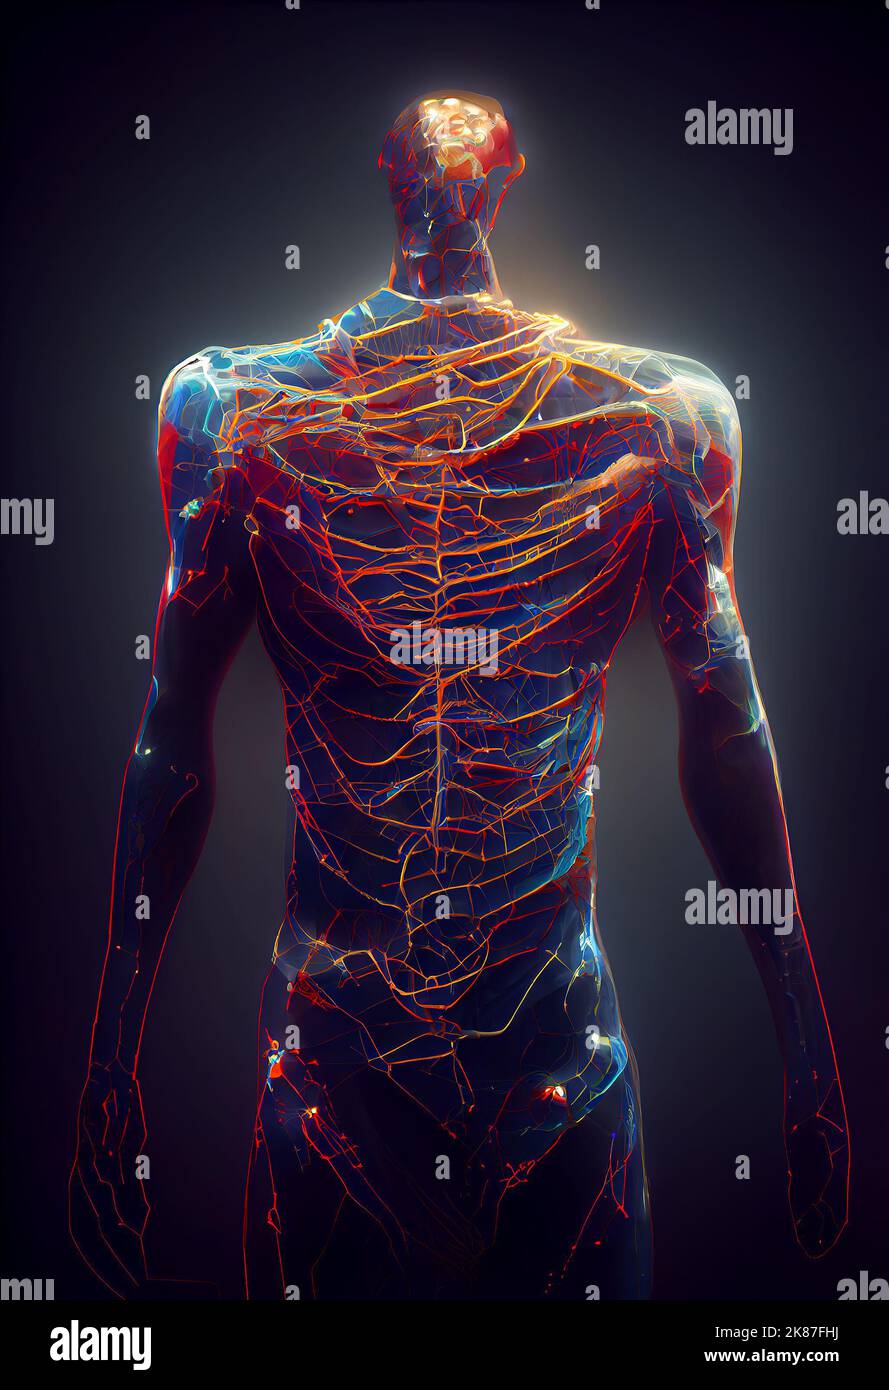 Réseau neuronal sous forme de corps humain. Figure humaine neuronale. Illustration numérique. Banque D'Images